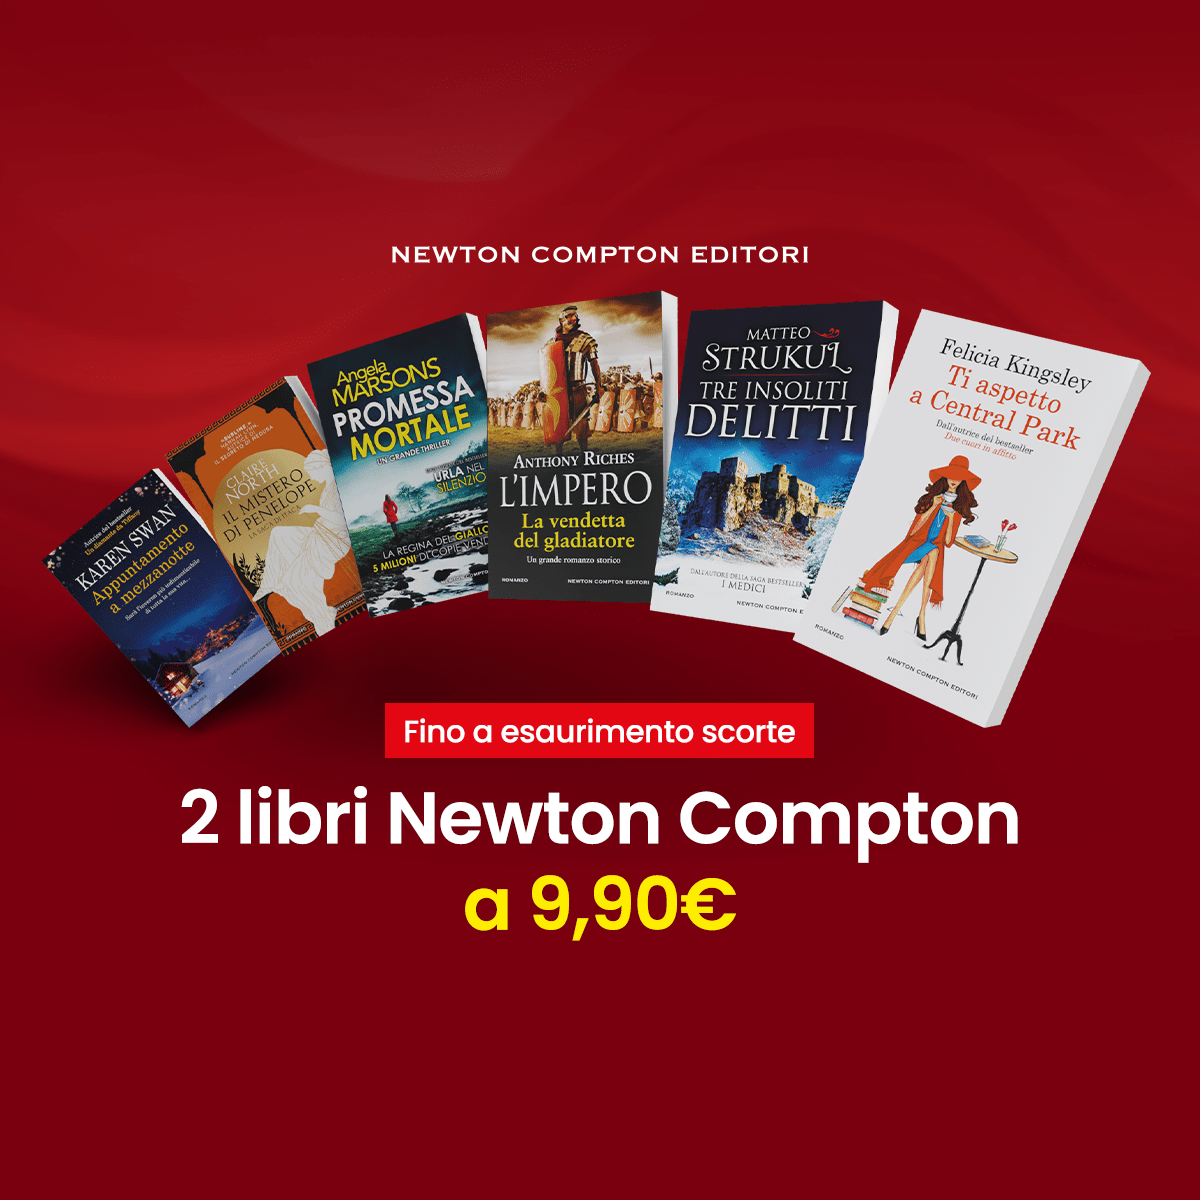 2 Libri Newton Compton a 9,90€